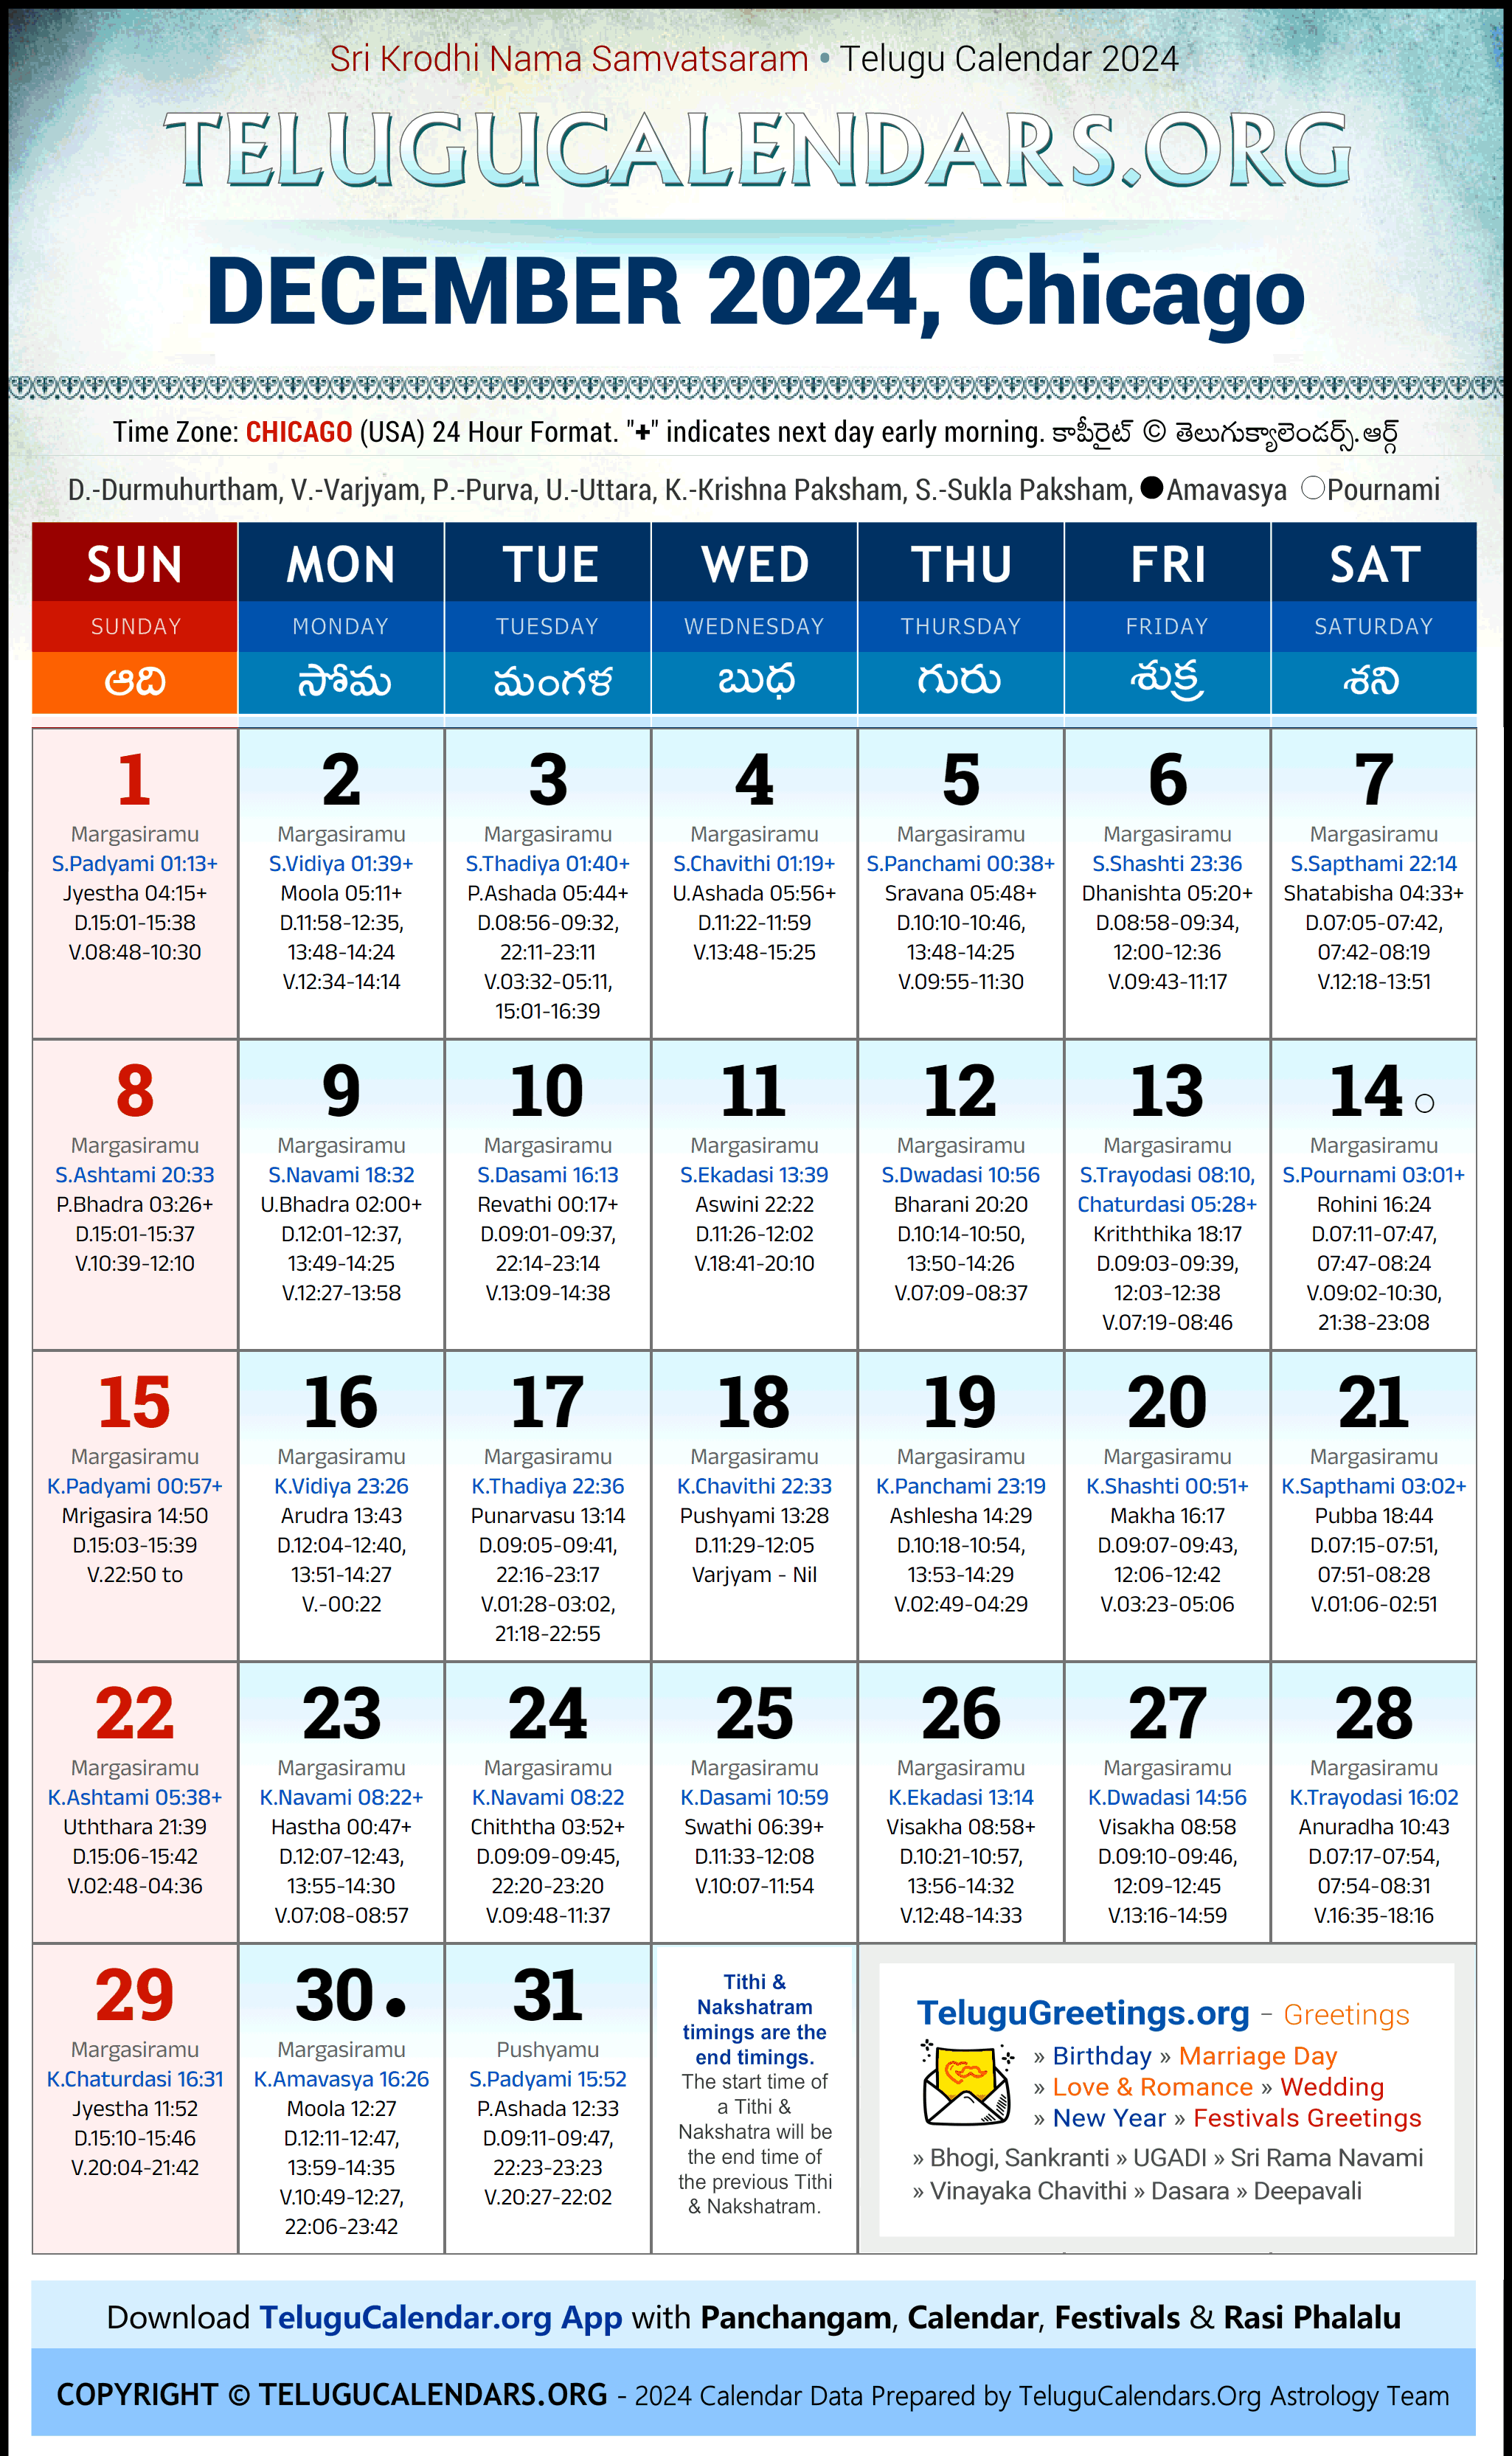 Telugu Calendar 2024 December Festivals for Chicago